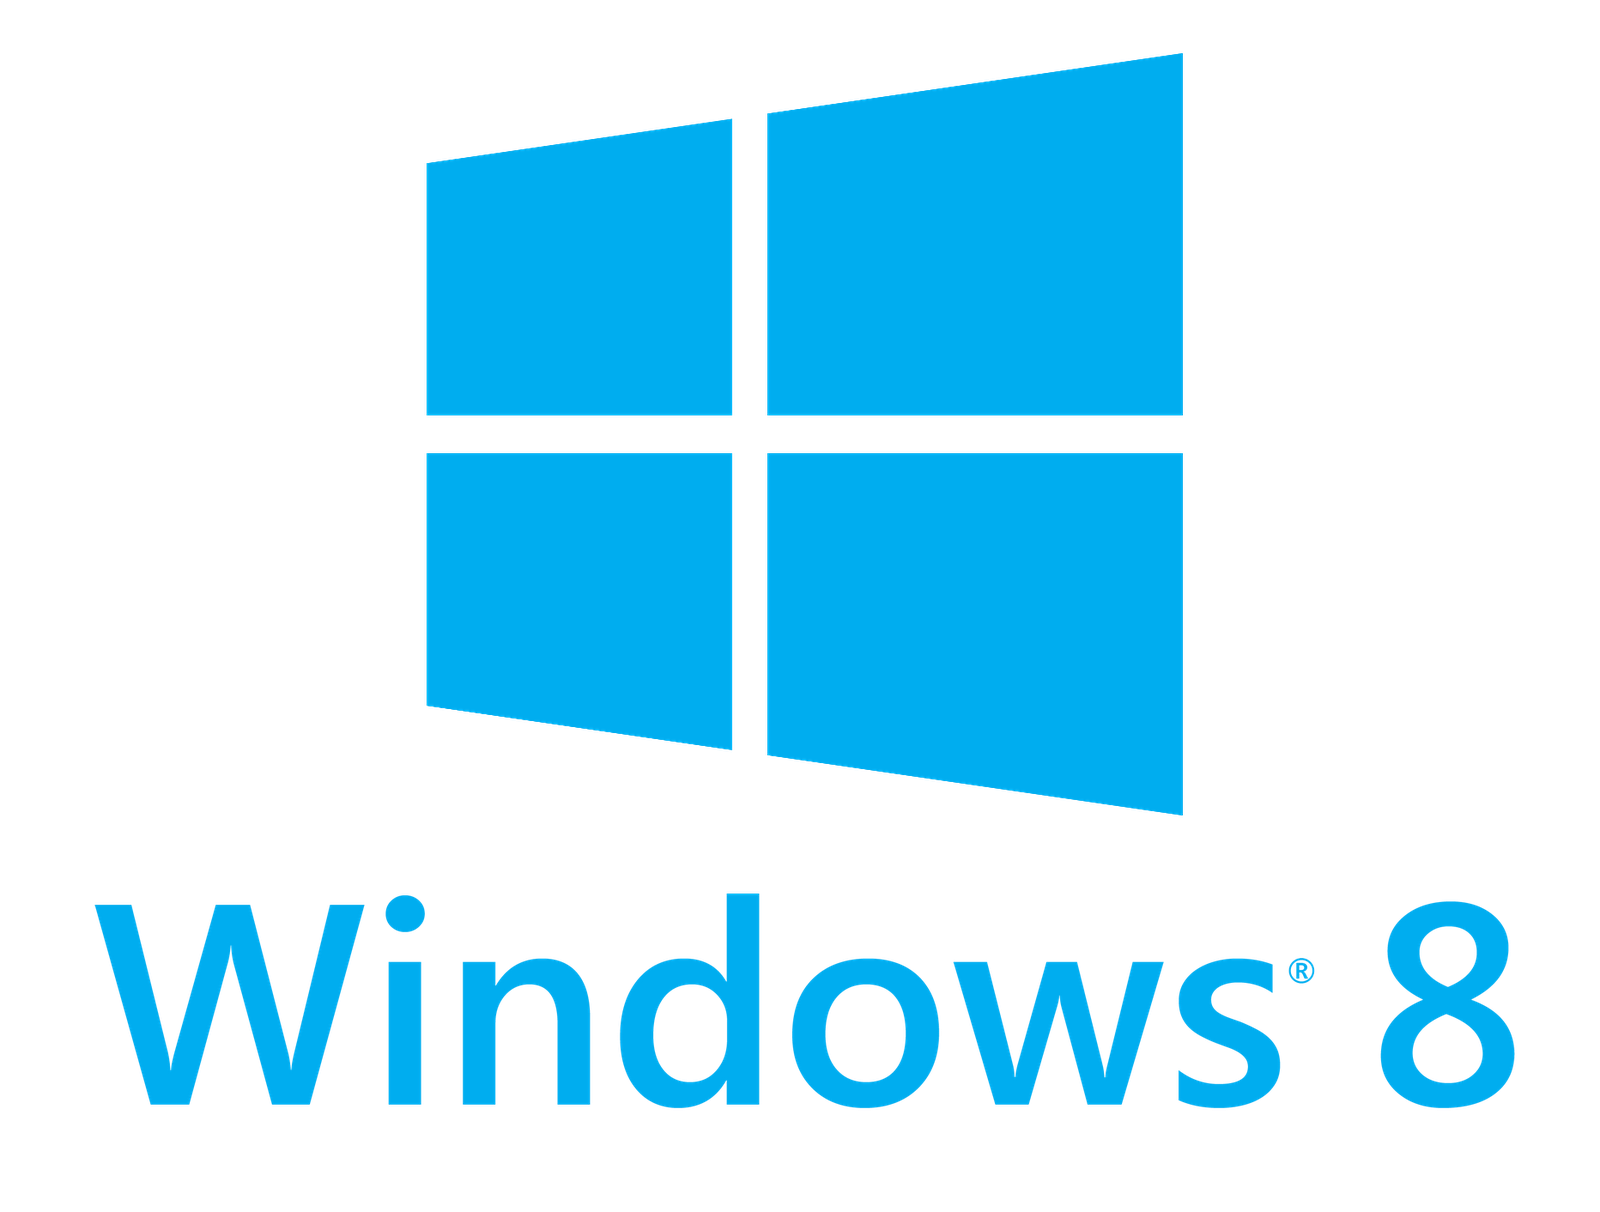 windows-8-logo-large2